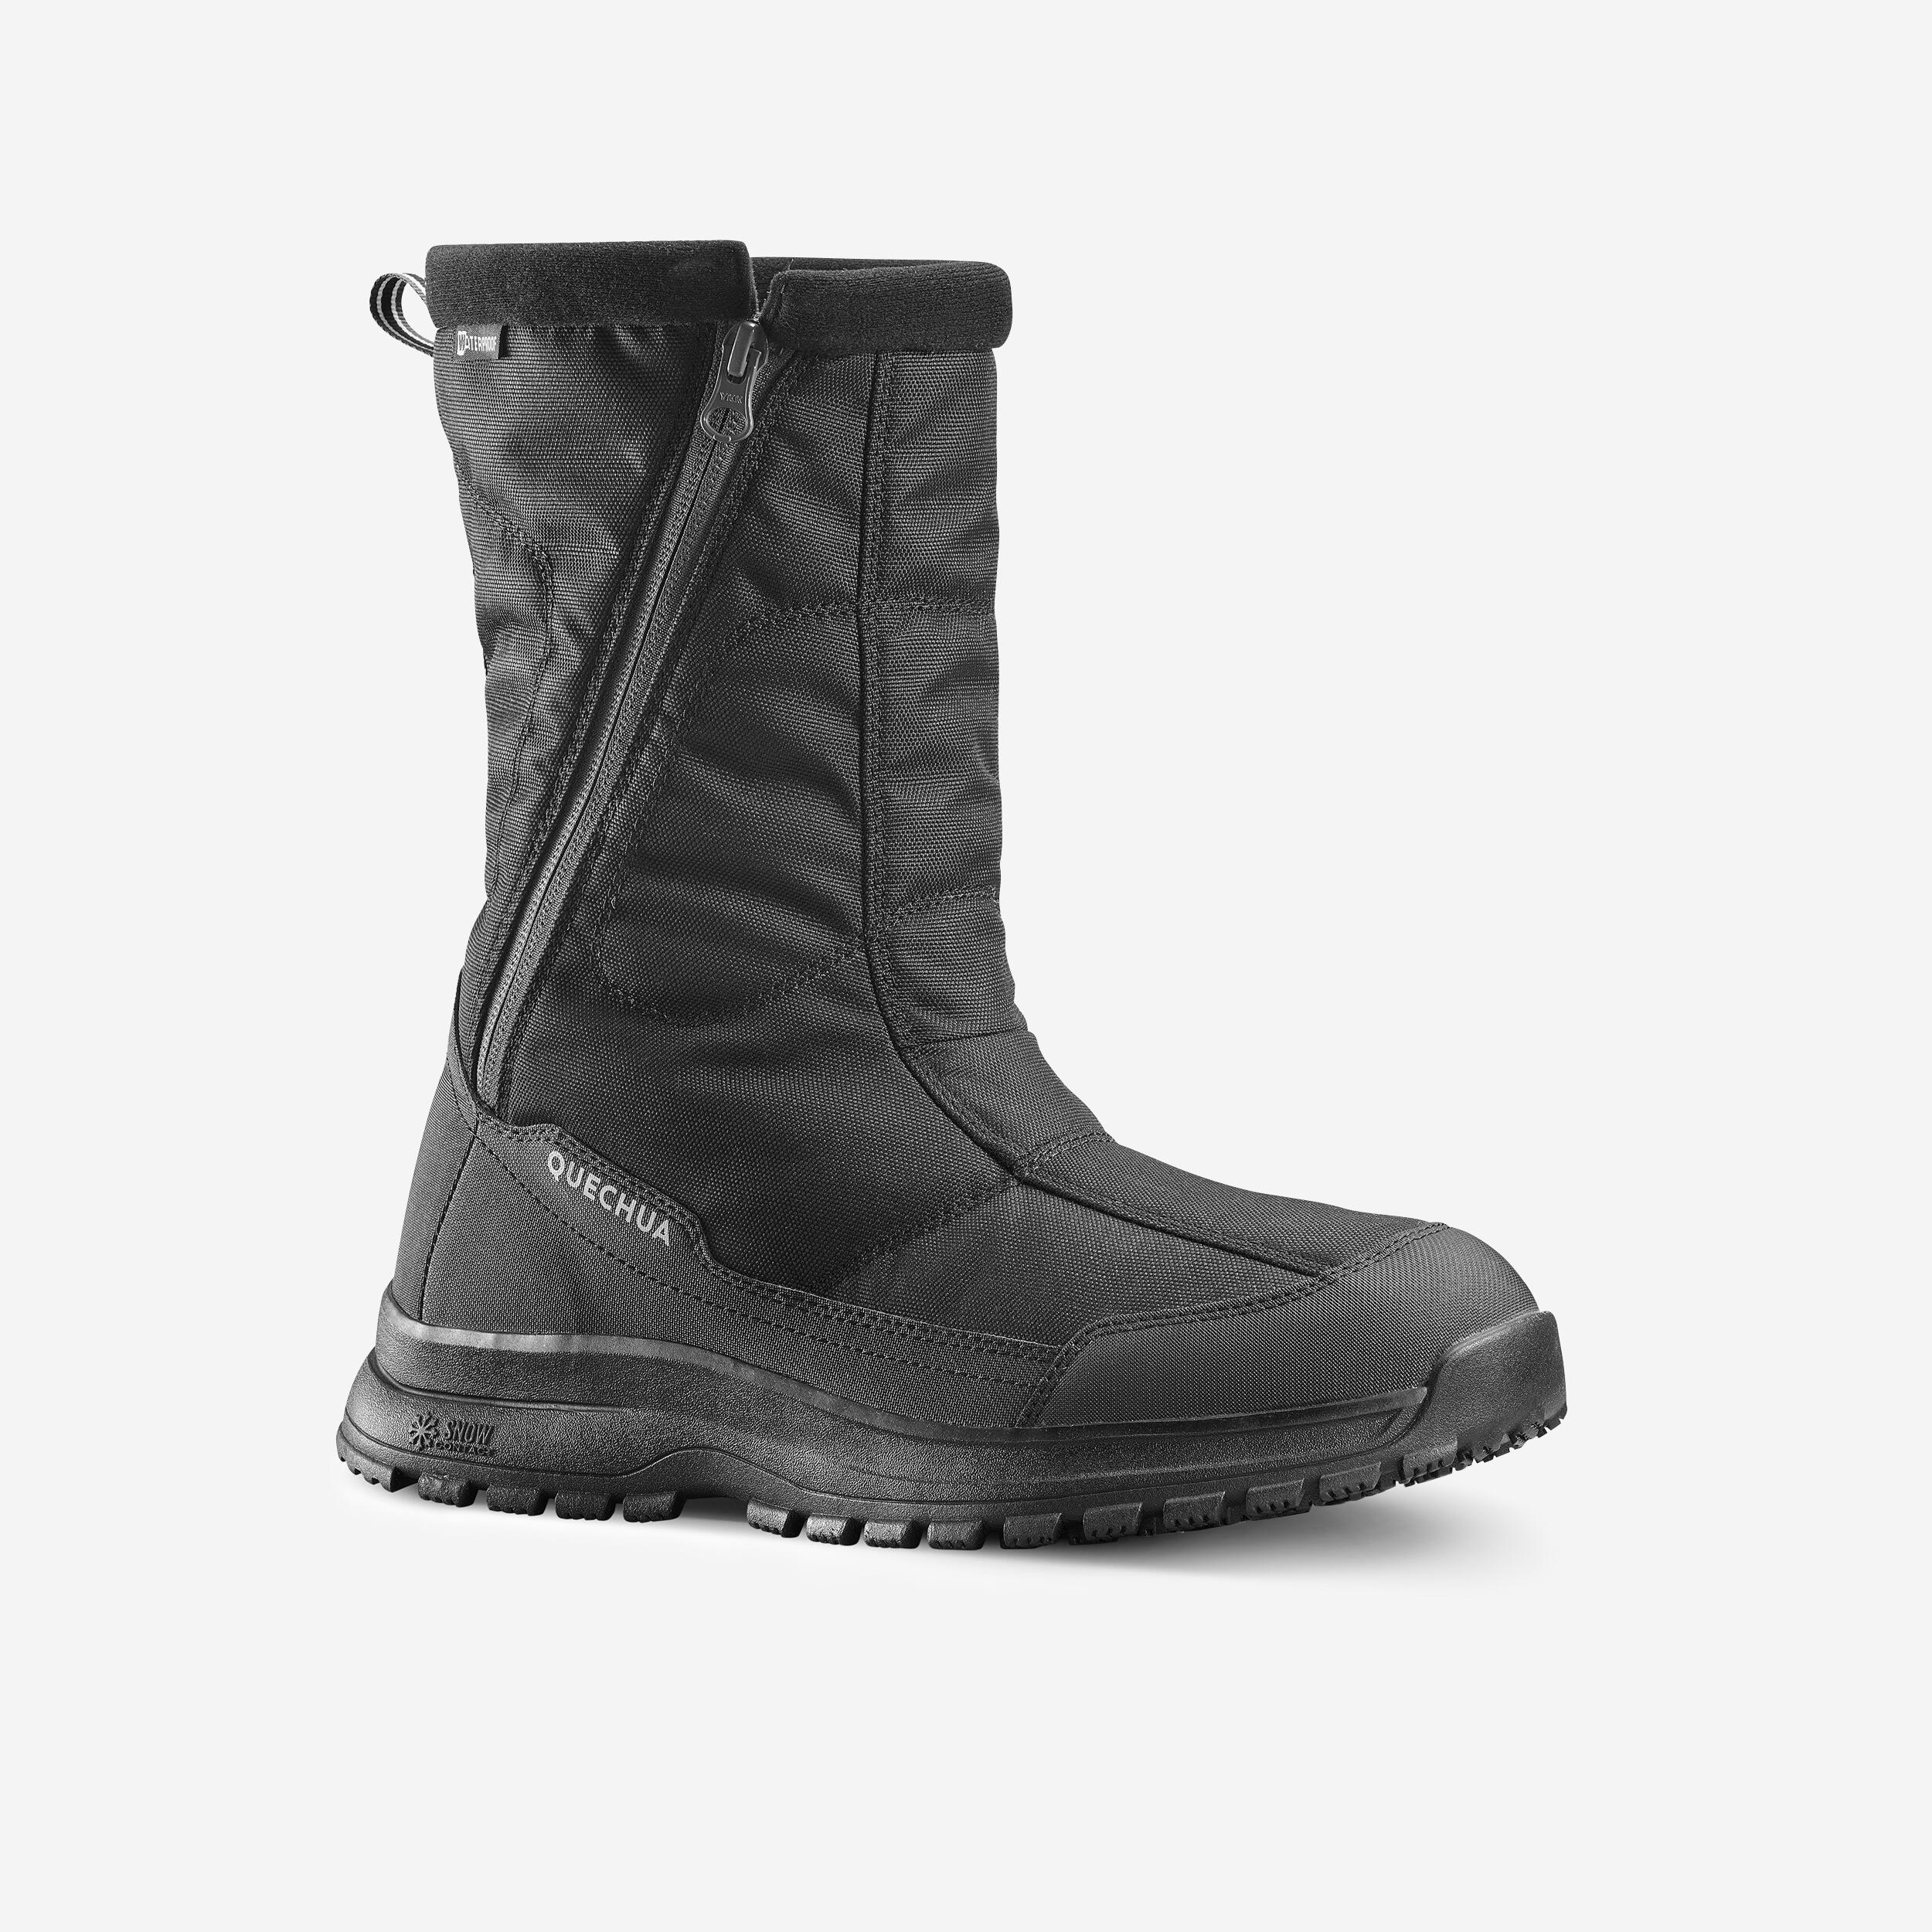 Men's warm waterproof snow hiking boots  - SH100 Zip 1/4